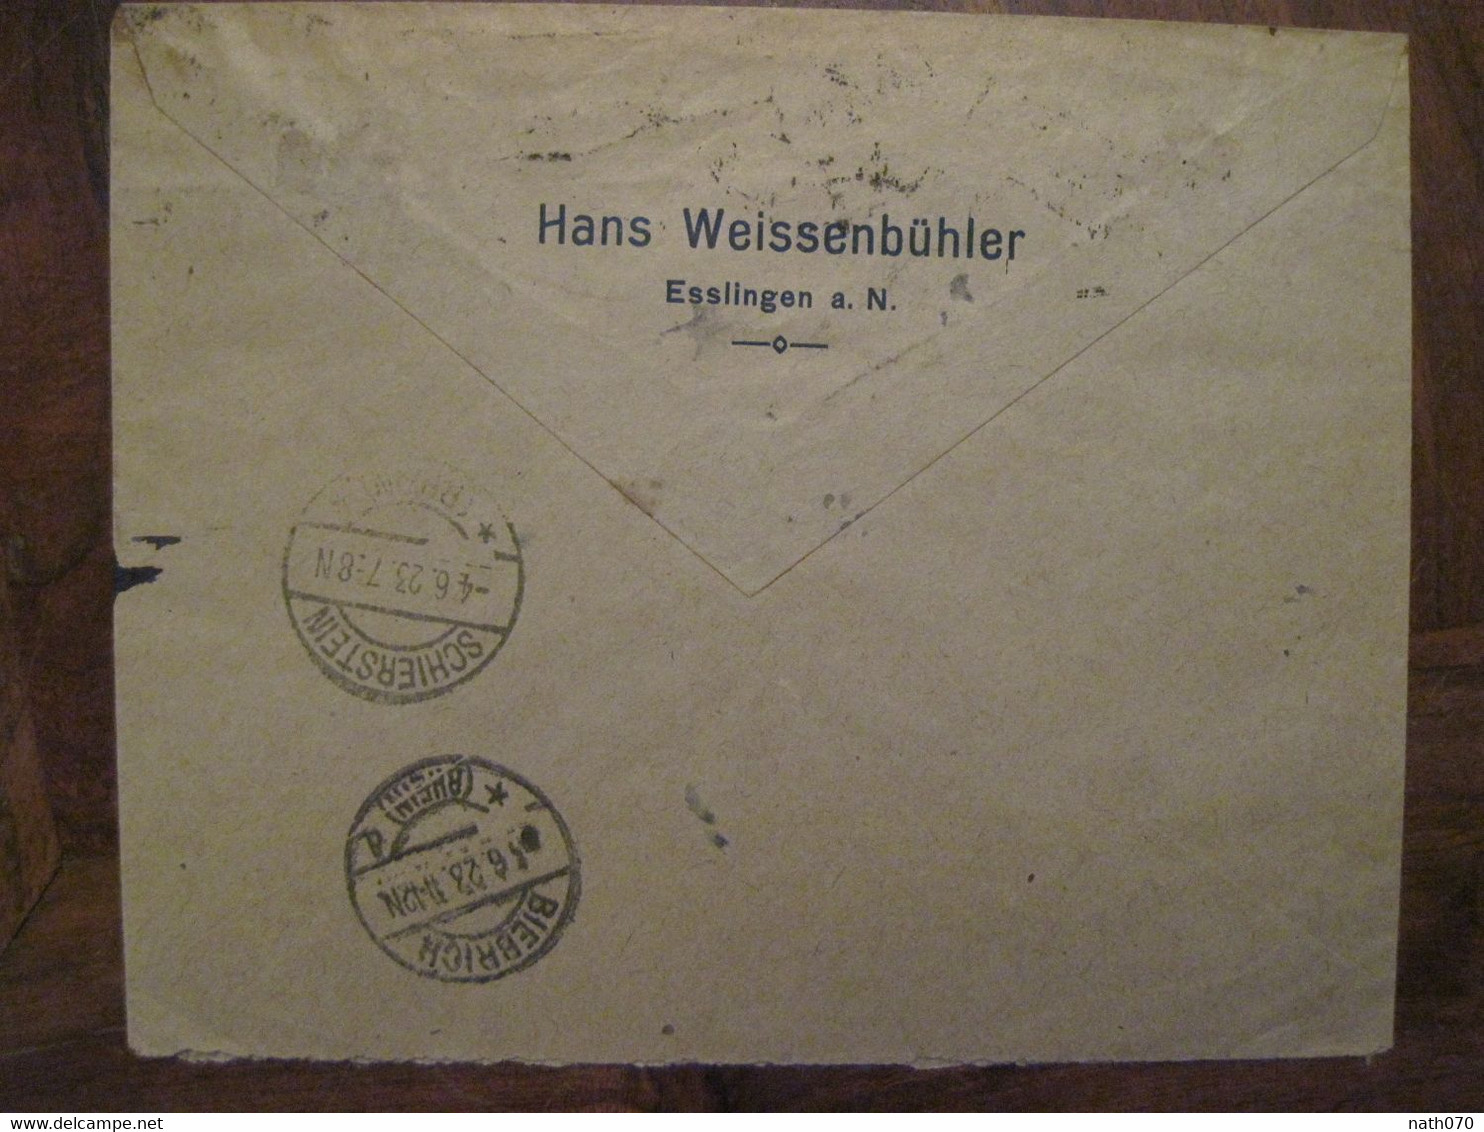 1923 Esslingen Schierstein Flugpost Luftpost Air Mail Poste Aerienne Cover Deutsches Reich DR Germany Einschreiben Horn - Airmail & Zeppelin